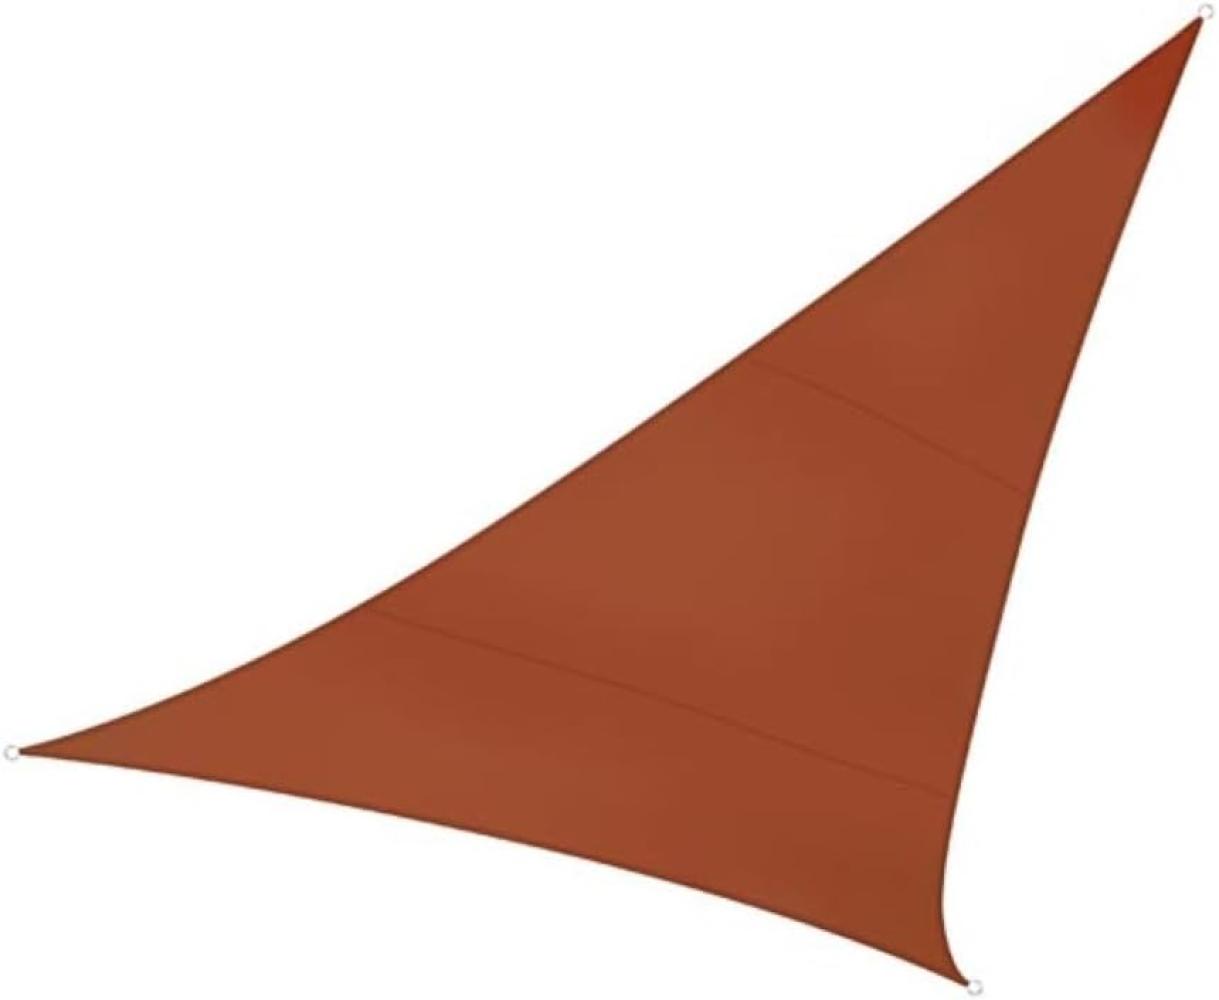 Sonnensegel Dreieck Terracotta 3,6m - Sonnenschutzsegel für Balkon & Terrasse Bild 1